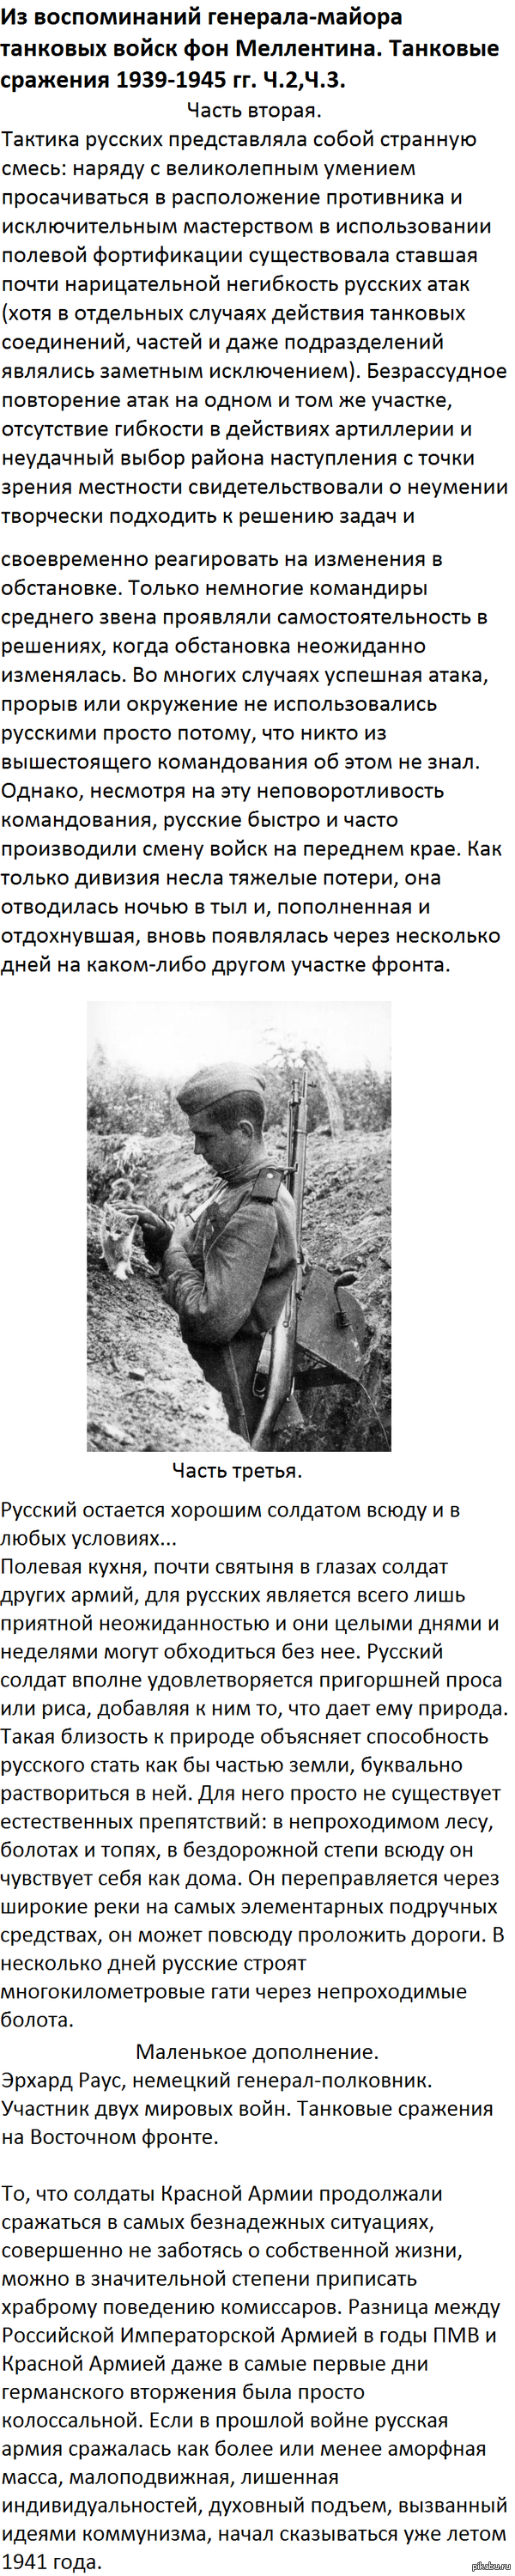    .   -    .   1939-1945 . . <a href="http://pikabu.ru/story/slozhnost_voynyi_s_russkimi_iz_vospominaniy_generalamayora_tankovyikh_voysk_fon_mellentina_tankovyie_srazheniya_19391945_gg_ch_1_2198732">http://pikabu.ru/story/_2198732</a>